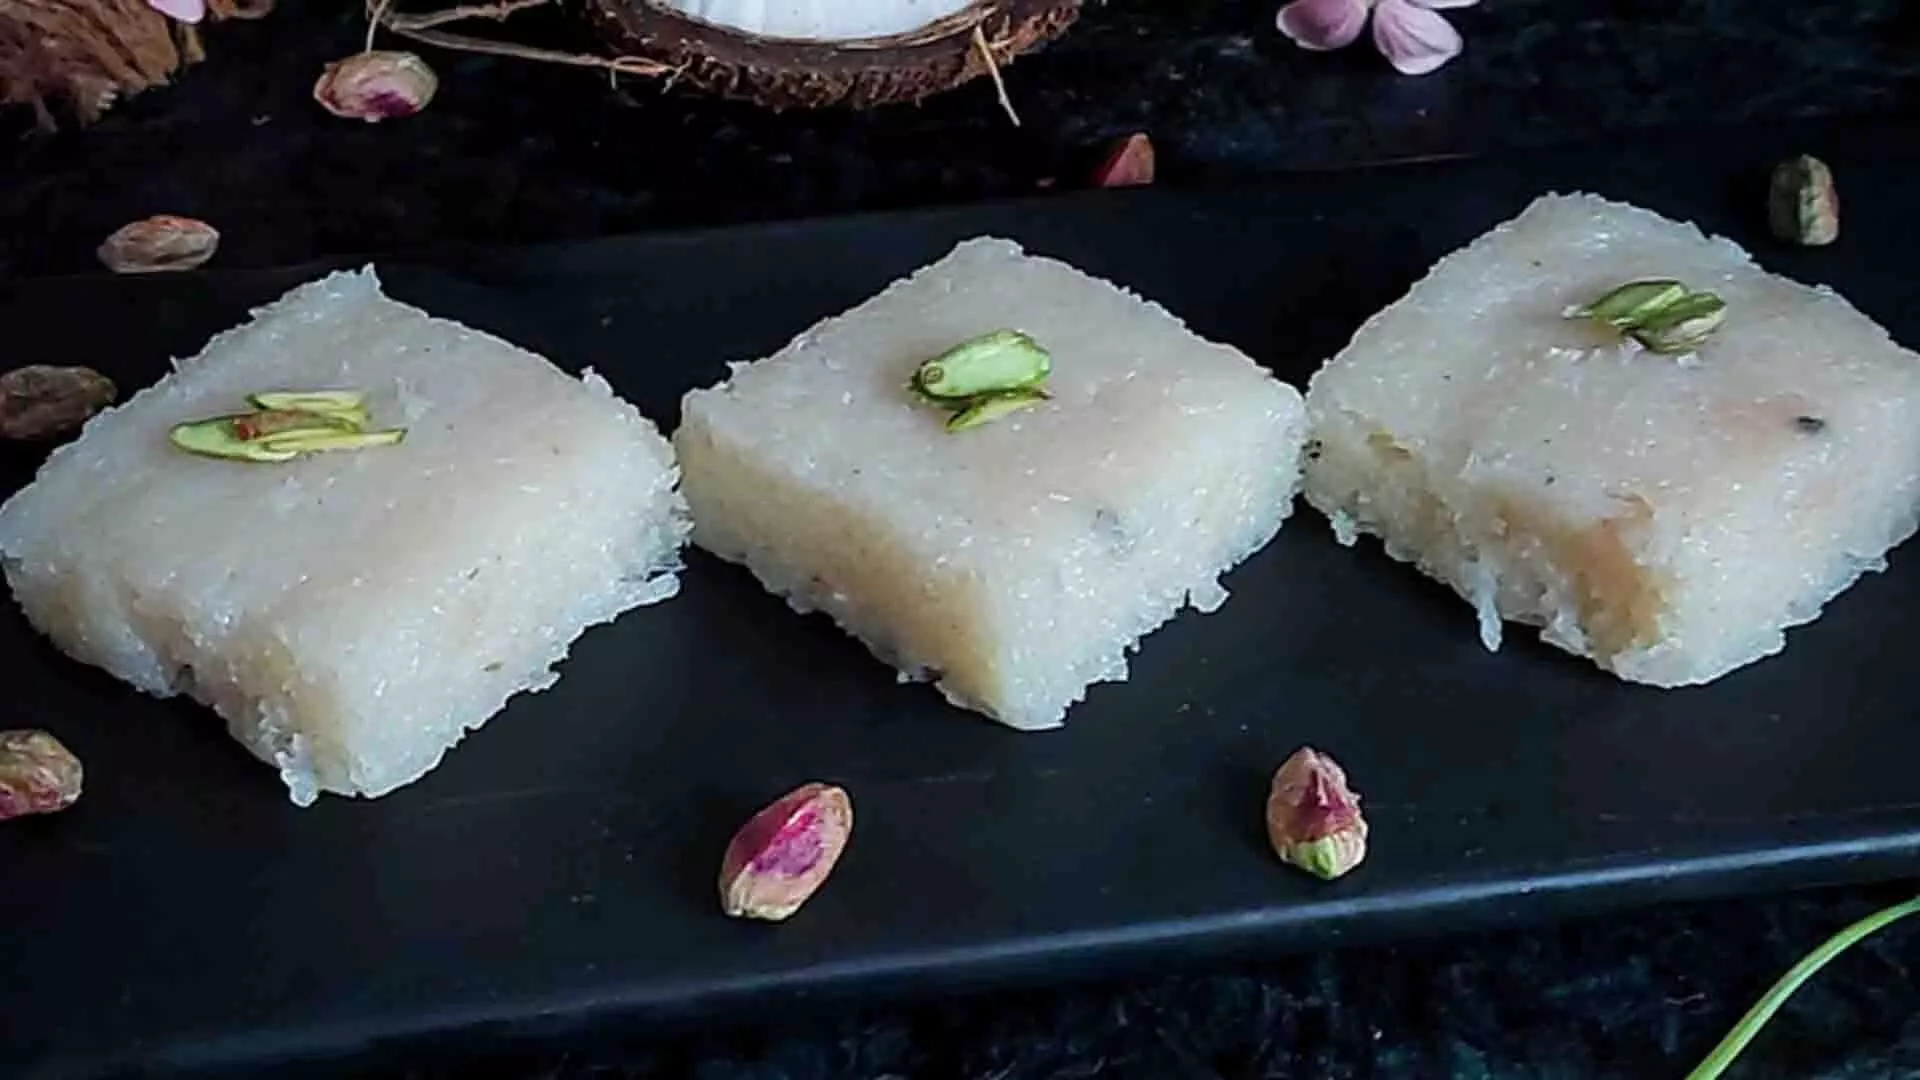 लोकप्रिय भारतीय मीठी नारियल बर्फी बनाएं, रेसिपी